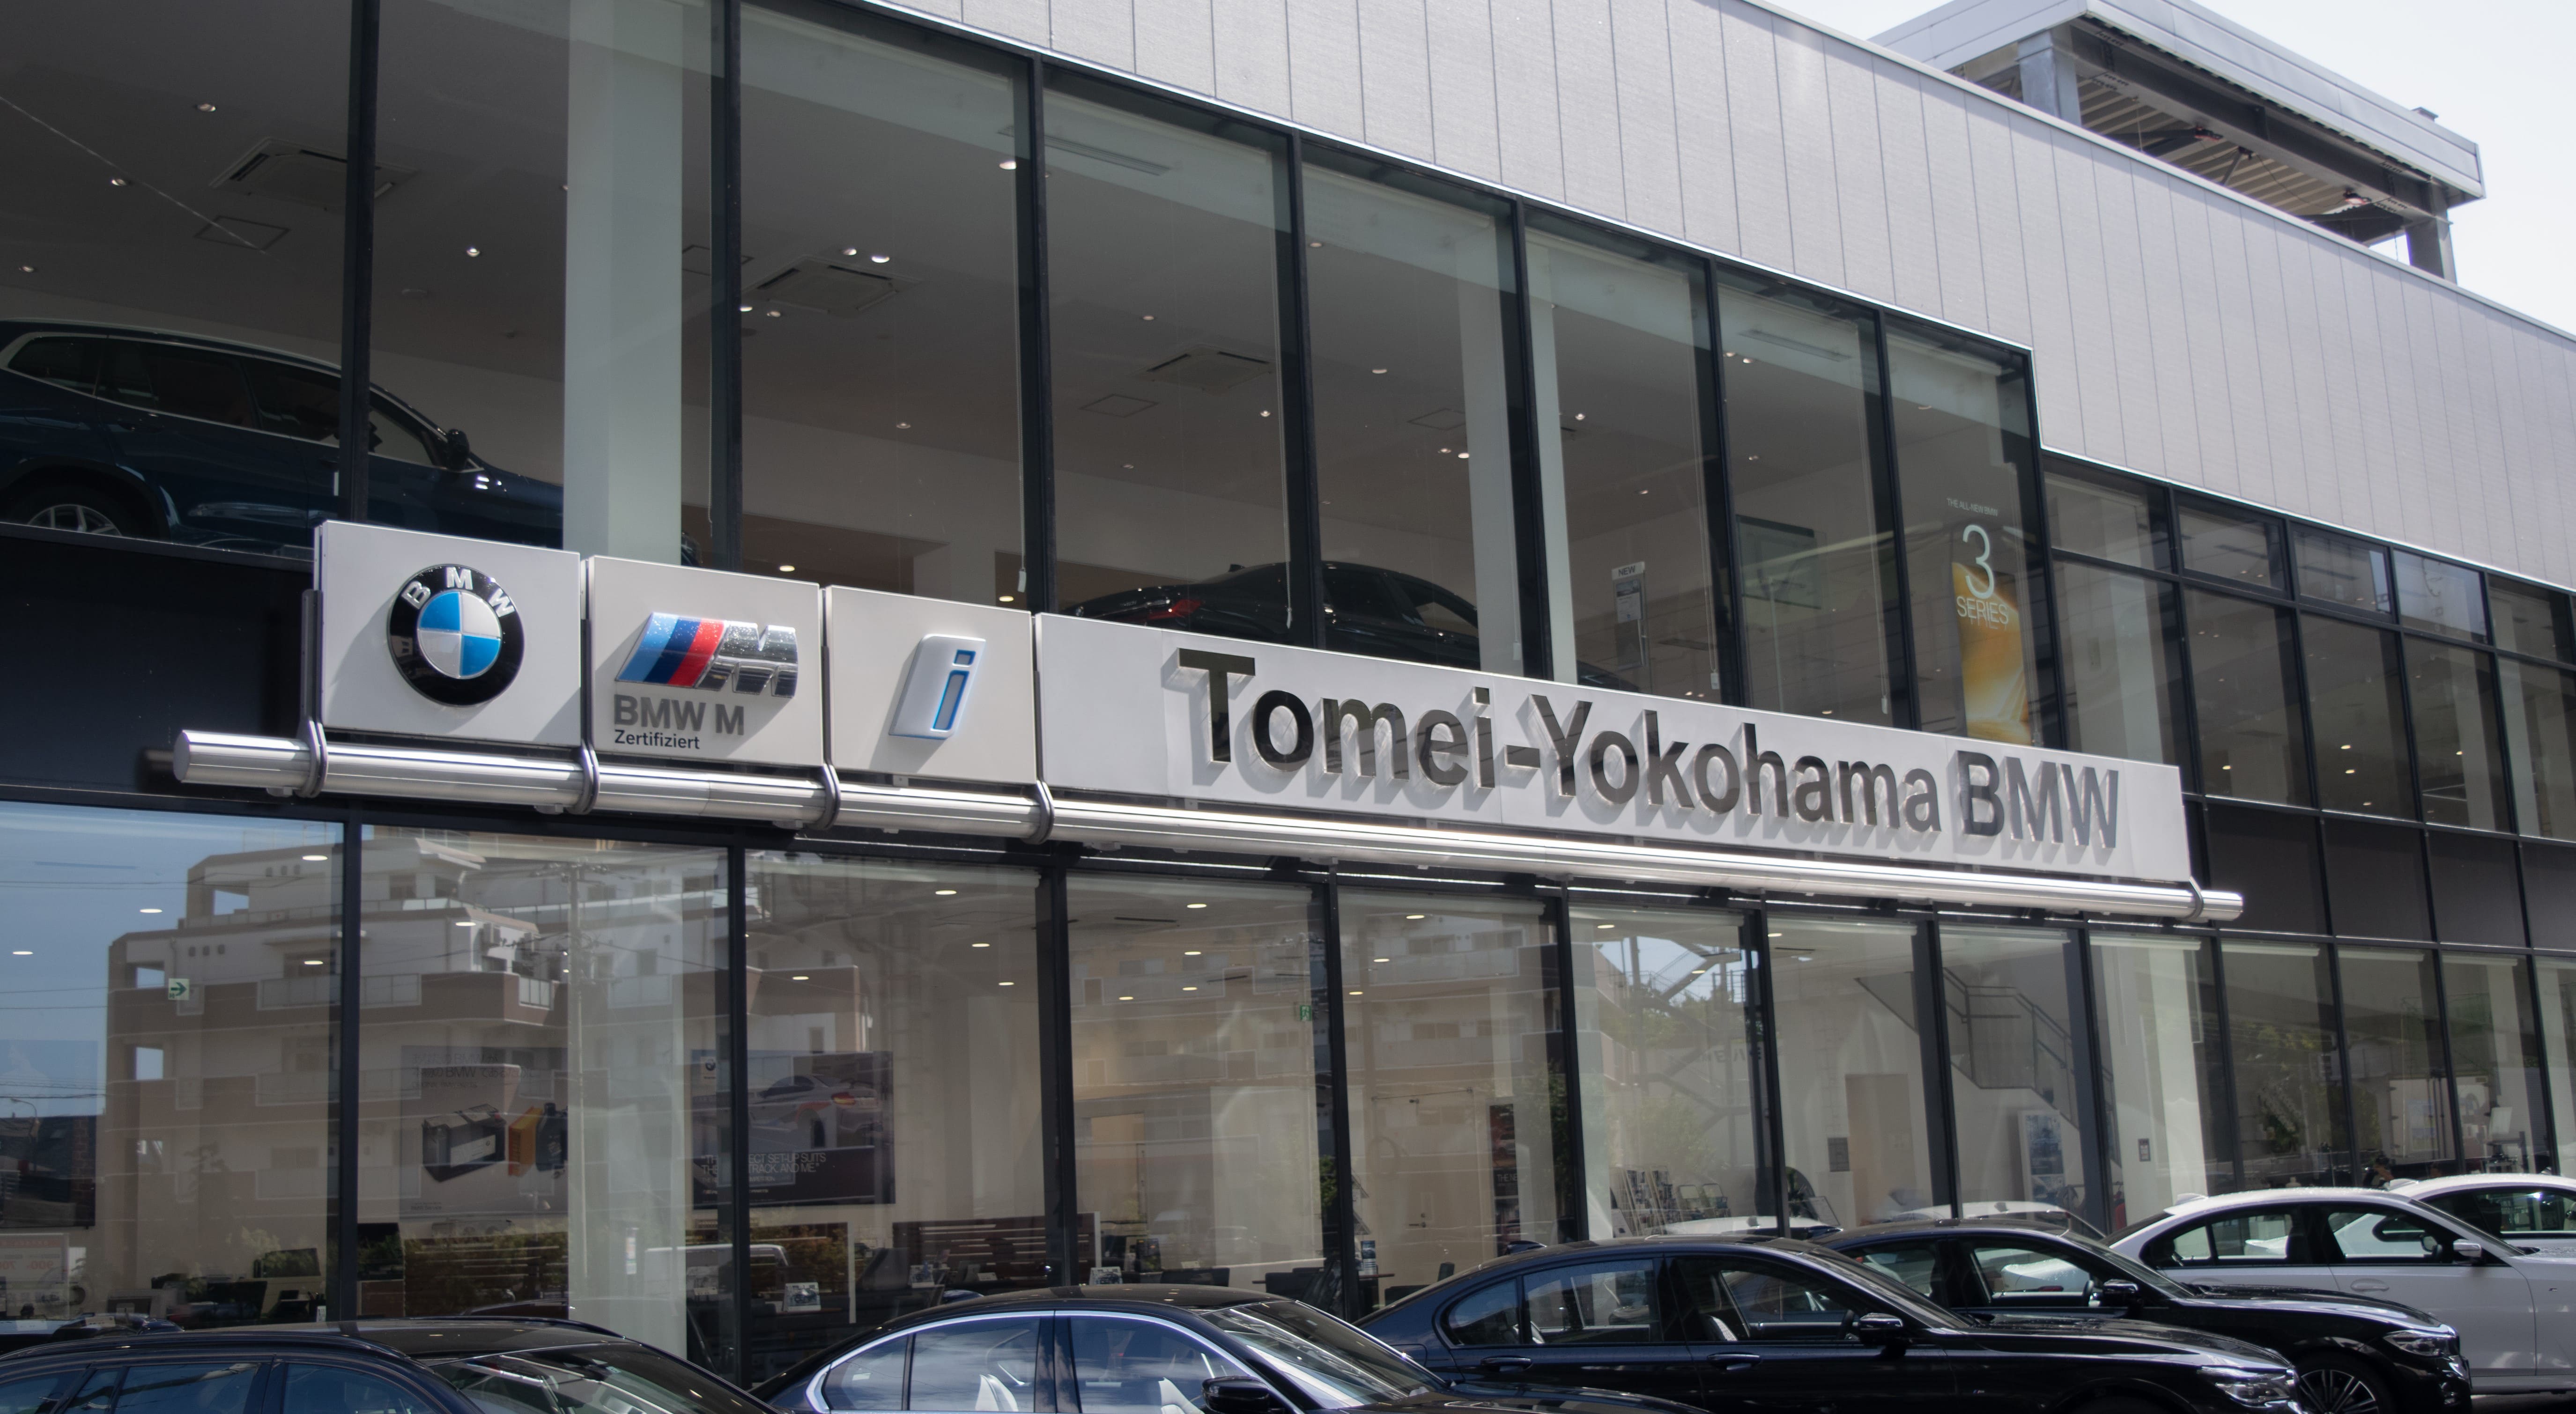 Tomei-Yokohama BMW